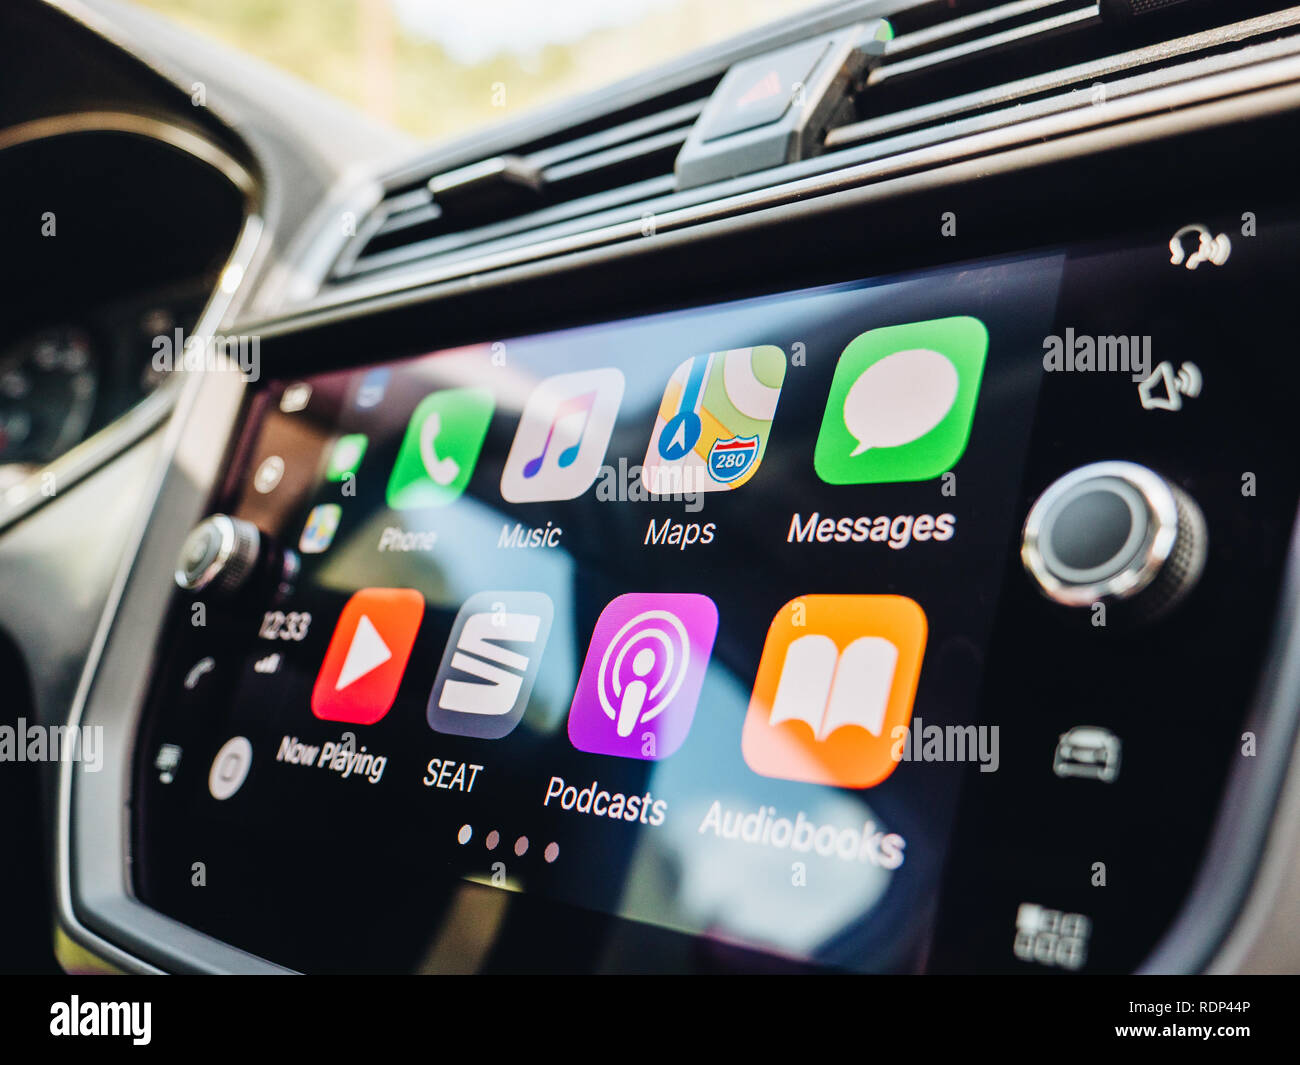 PALMA DE MAJORQUE, ESPAGNE - 10 MAI 2018 : vue latérale du grand écran de l'ordinateur de bord avec des apps boutons sur l'écran principal d'Apple CarPlay dans tableau de bord de voiture moderne Banque D'Images